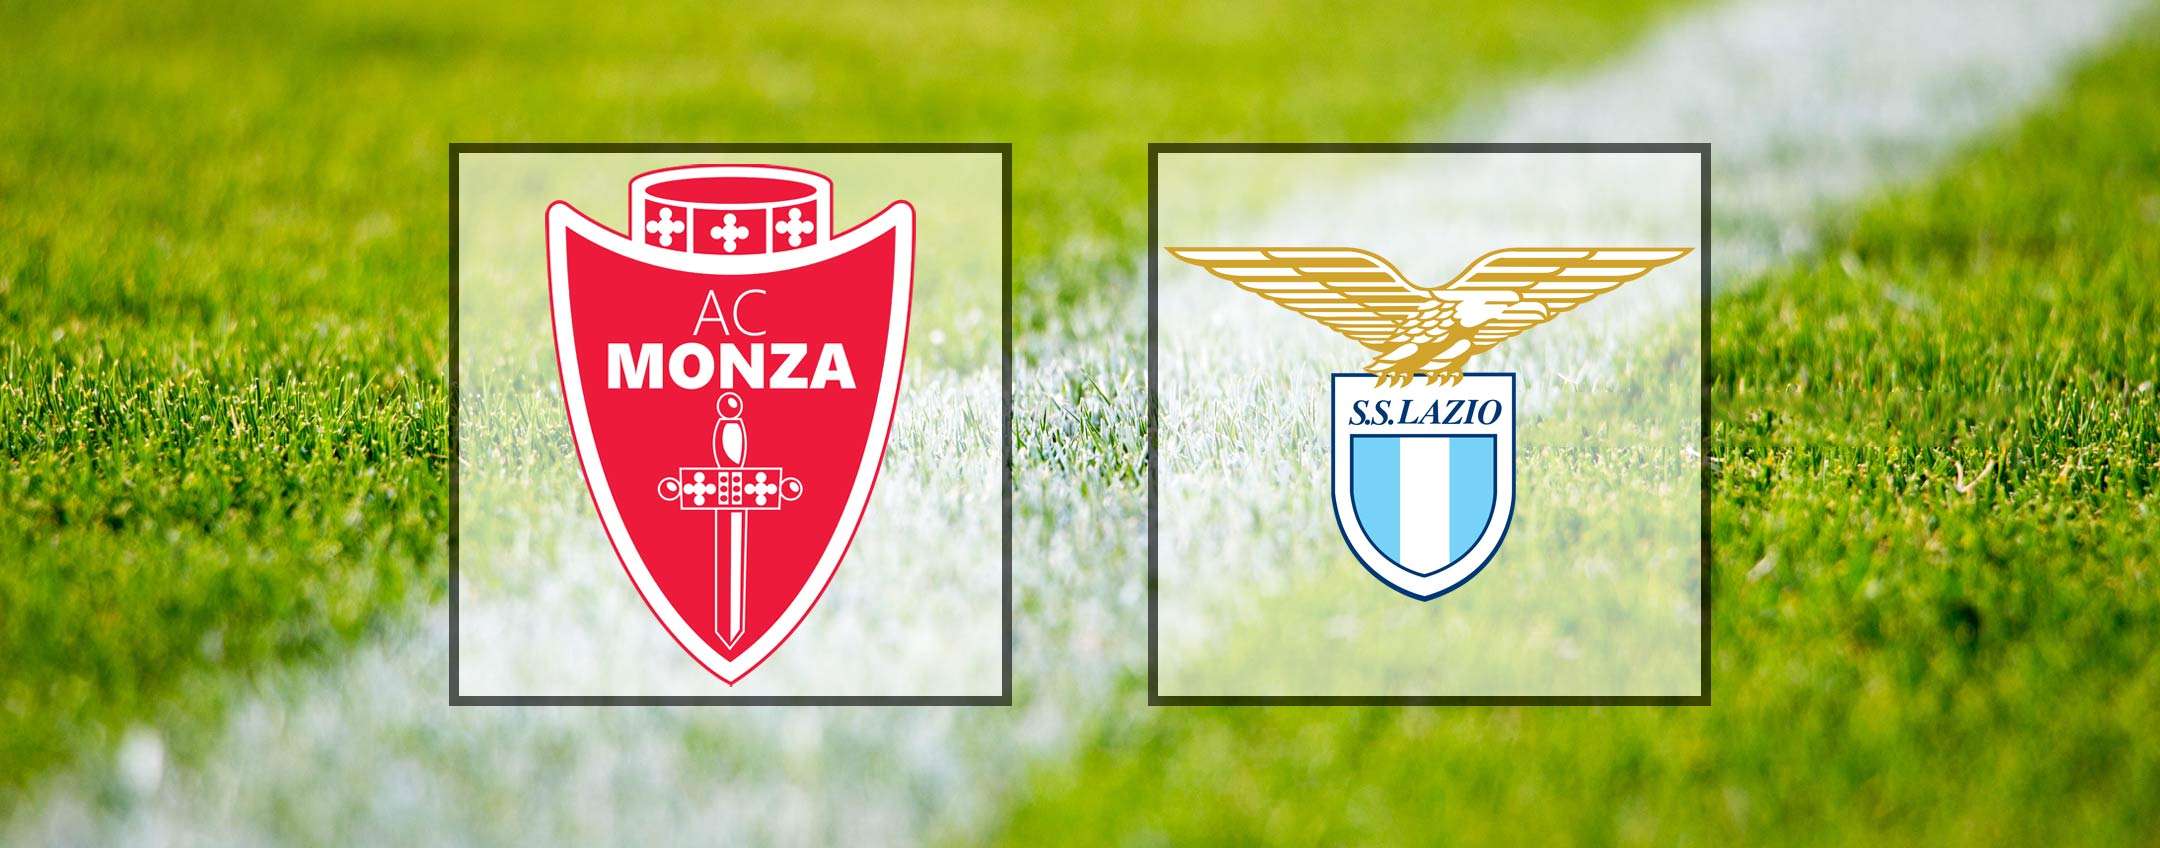 Come vedere Monza-Lazio in diretta streaming (Serie A)